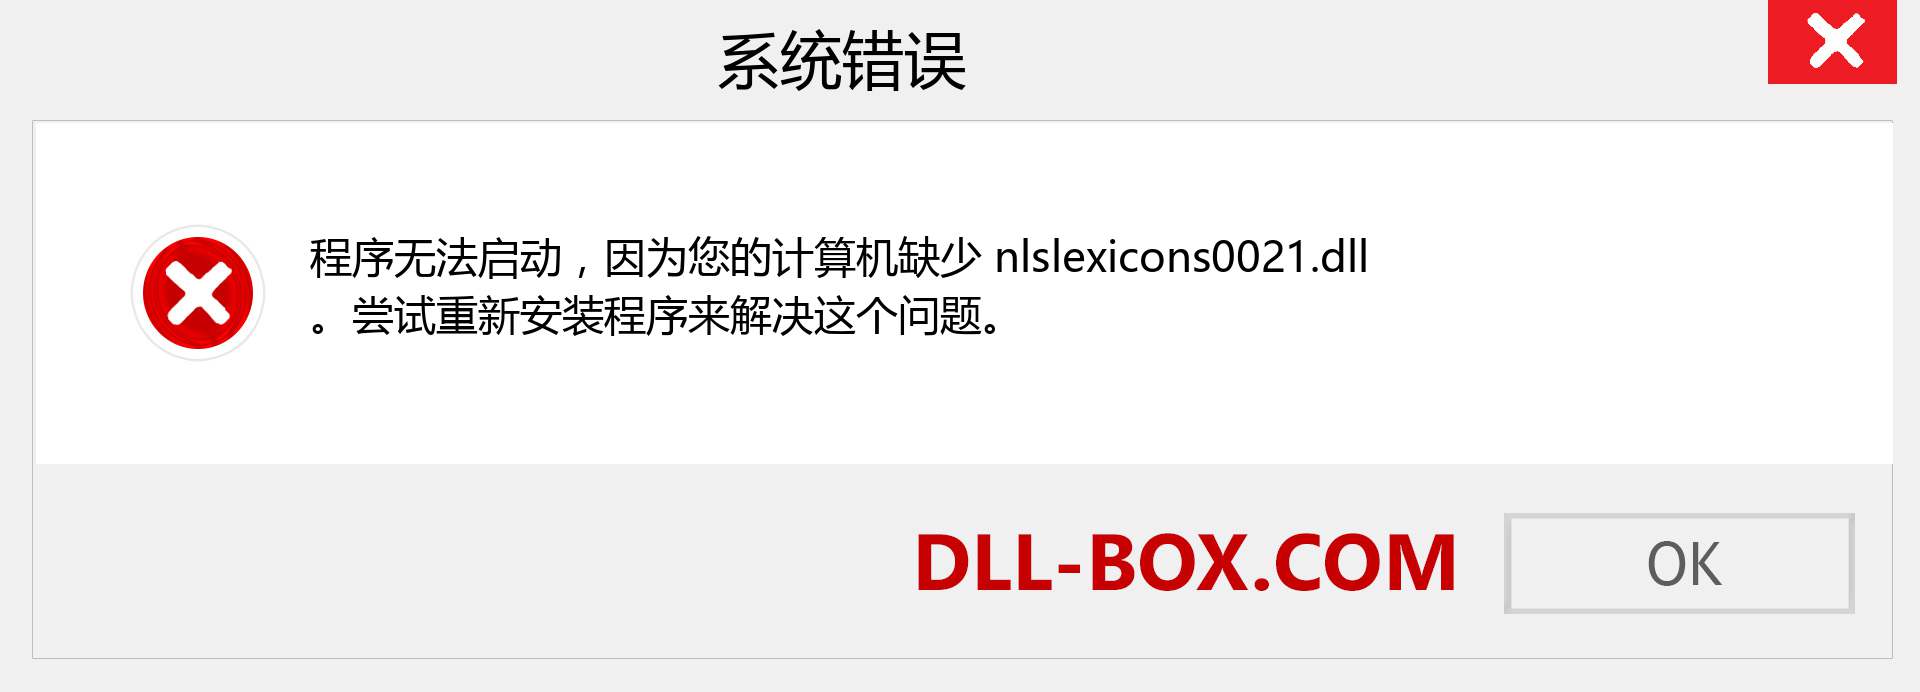 nlslexicons0021.dll 文件丢失？。 适用于 Windows 7、8、10 的下载 - 修复 Windows、照片、图像上的 nlslexicons0021 dll 丢失错误